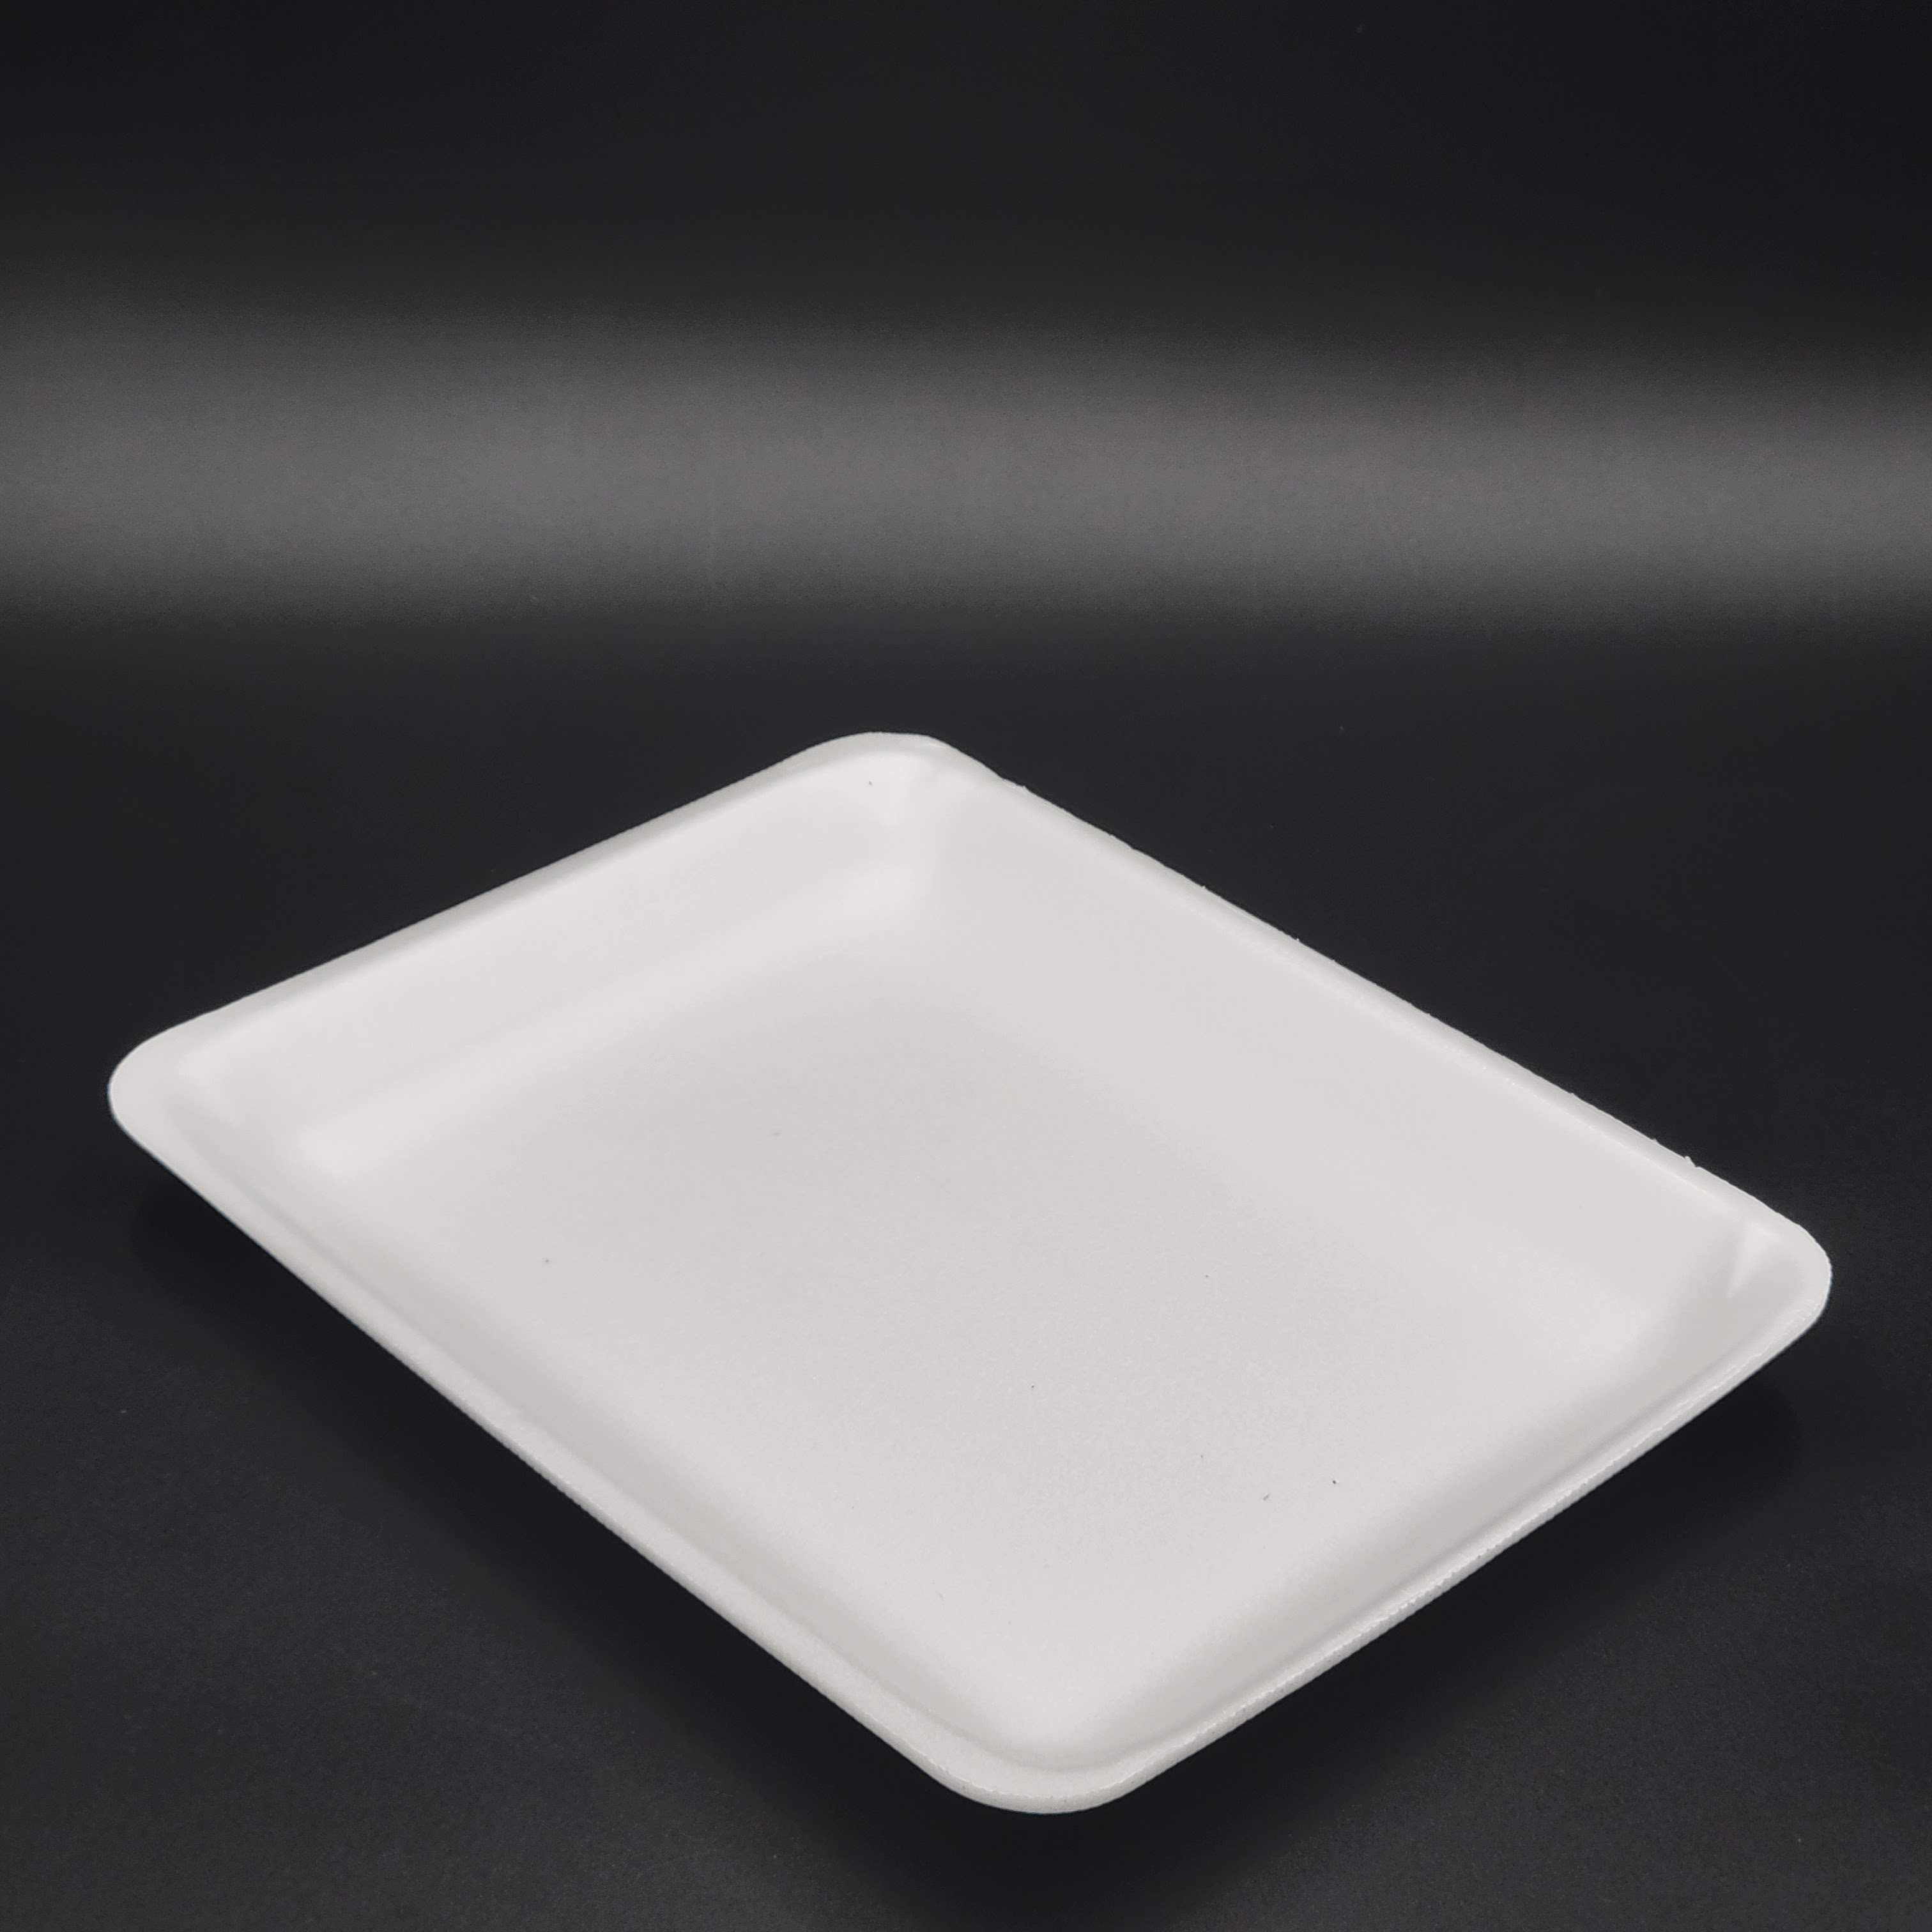 Meat Foam Tray White 8P (8-1/4" x 10-1/2" x 1") - 200/Case